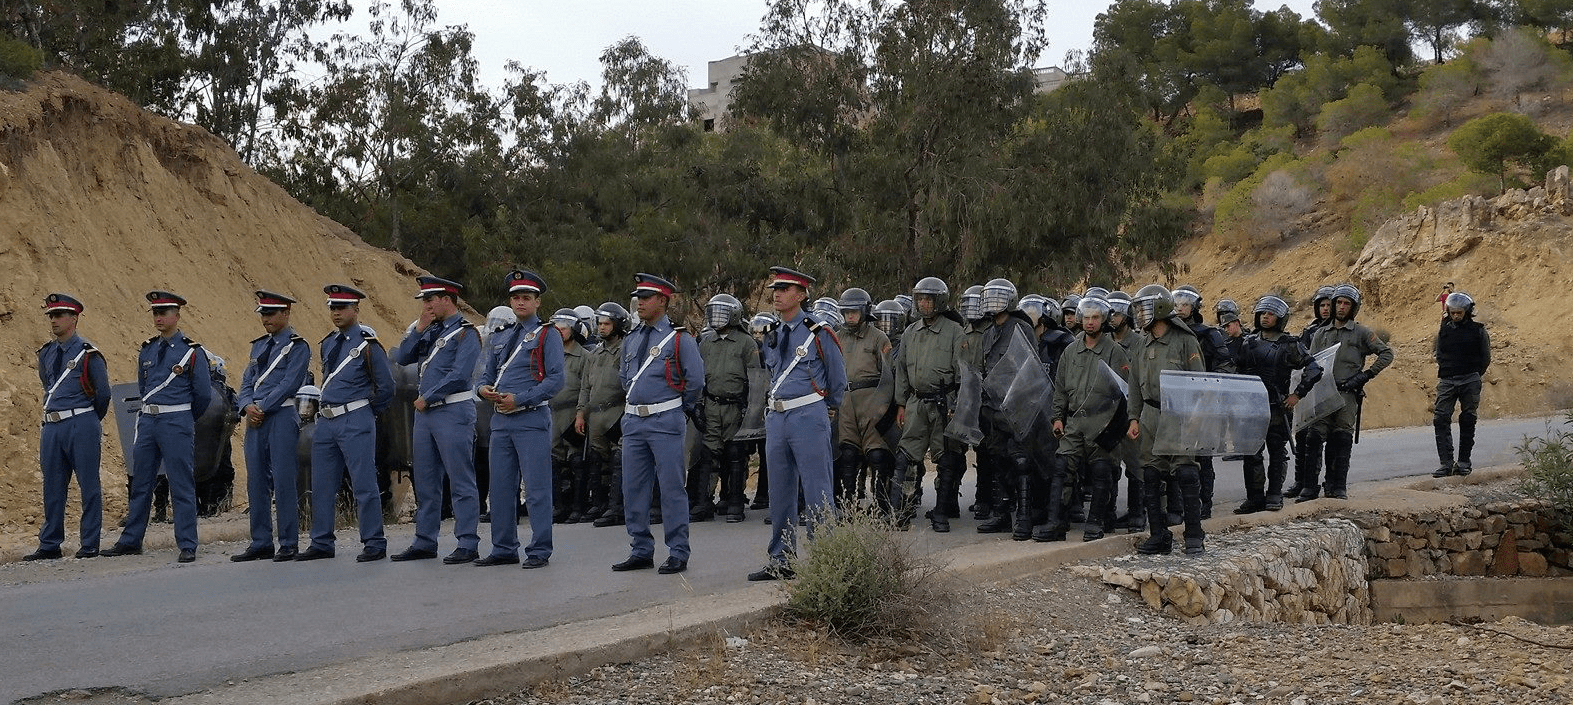 Gendarmes tijdens een demonstratie in de Rif 2017